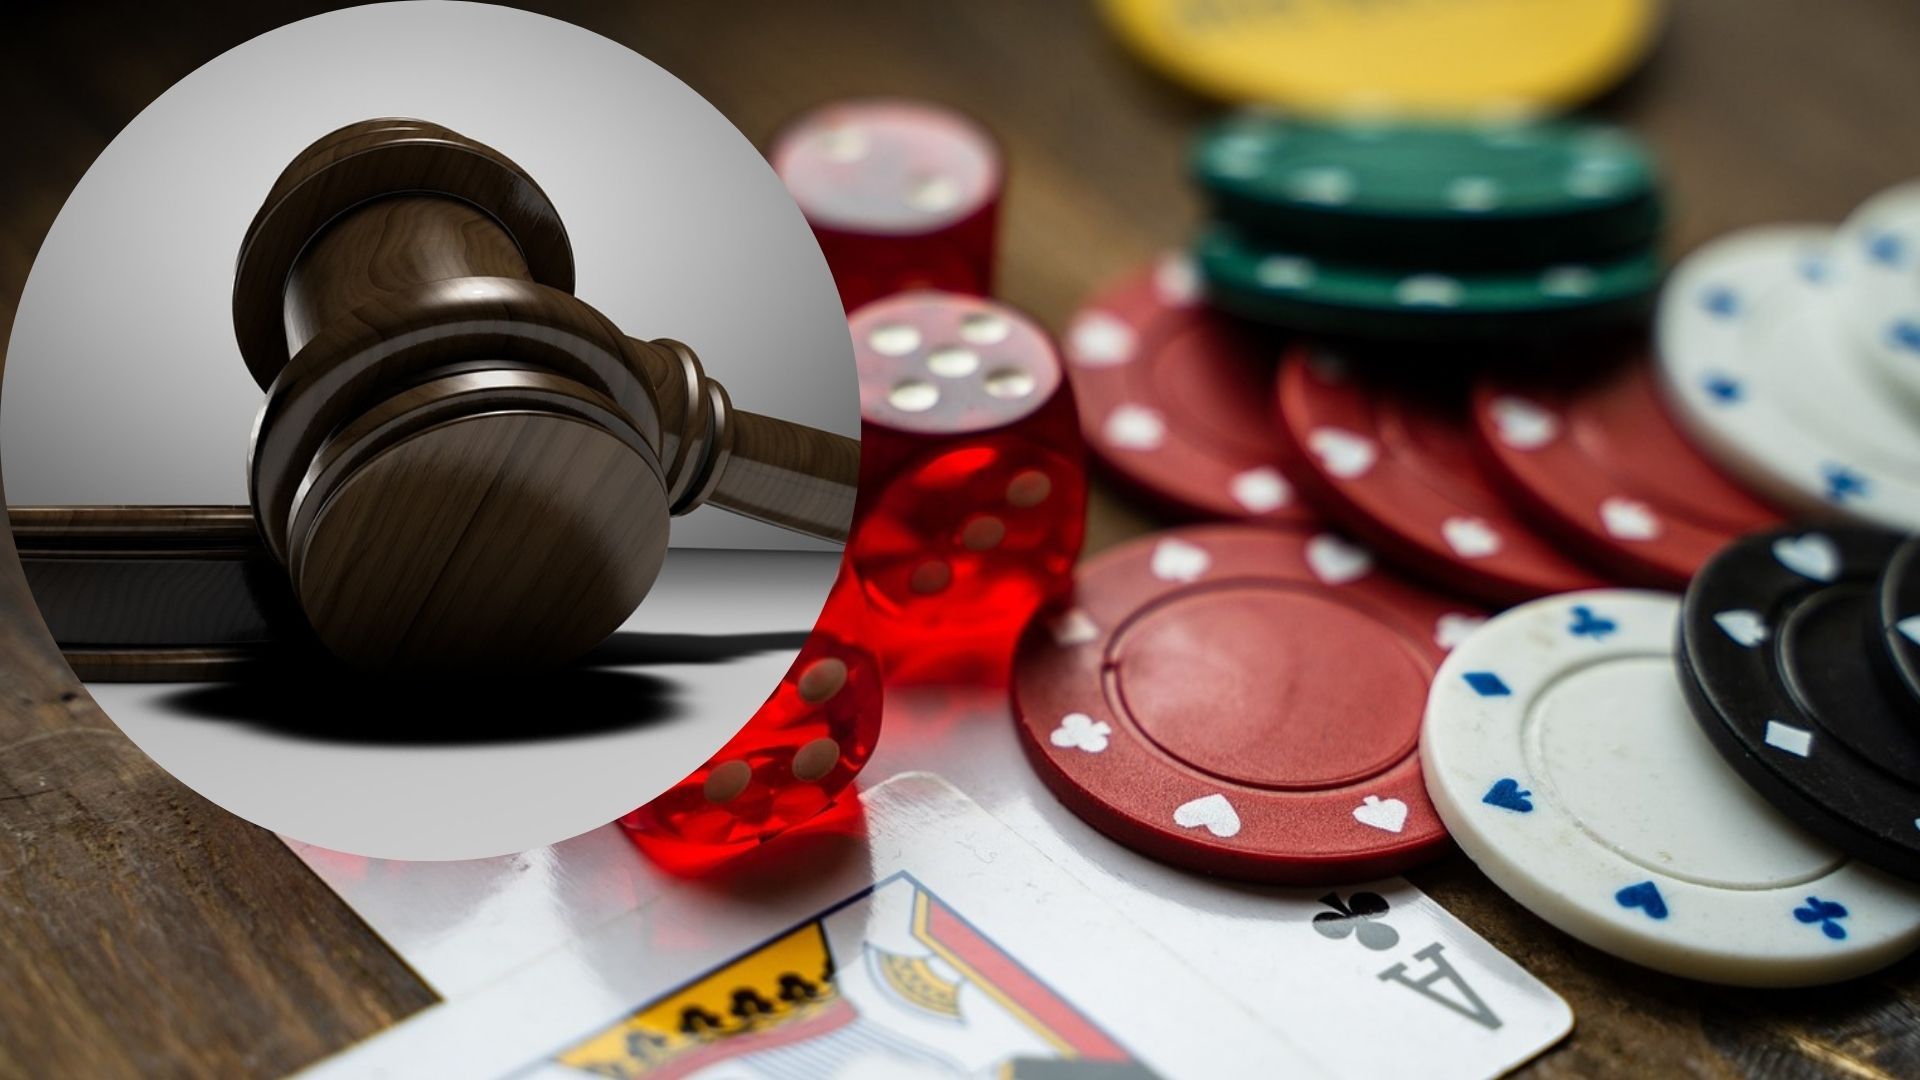 5 українців судитимуть за організацію незаконного казино з росіянами